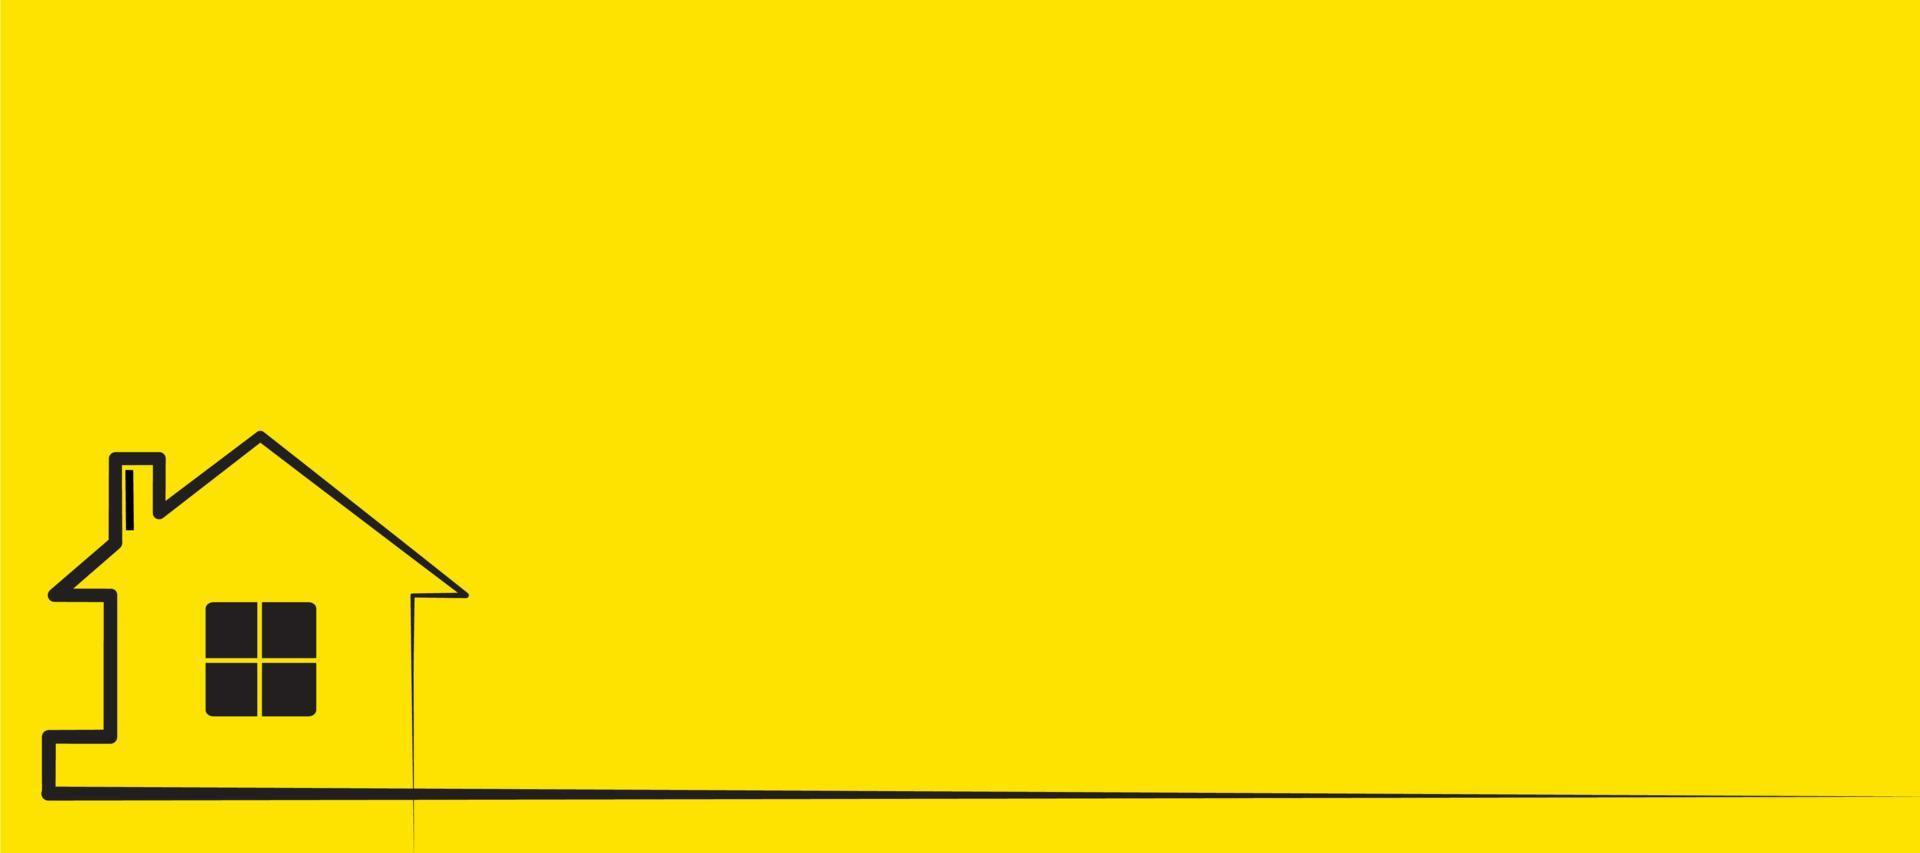 design vetorial de fundo amarelo com imagem de casa vetor